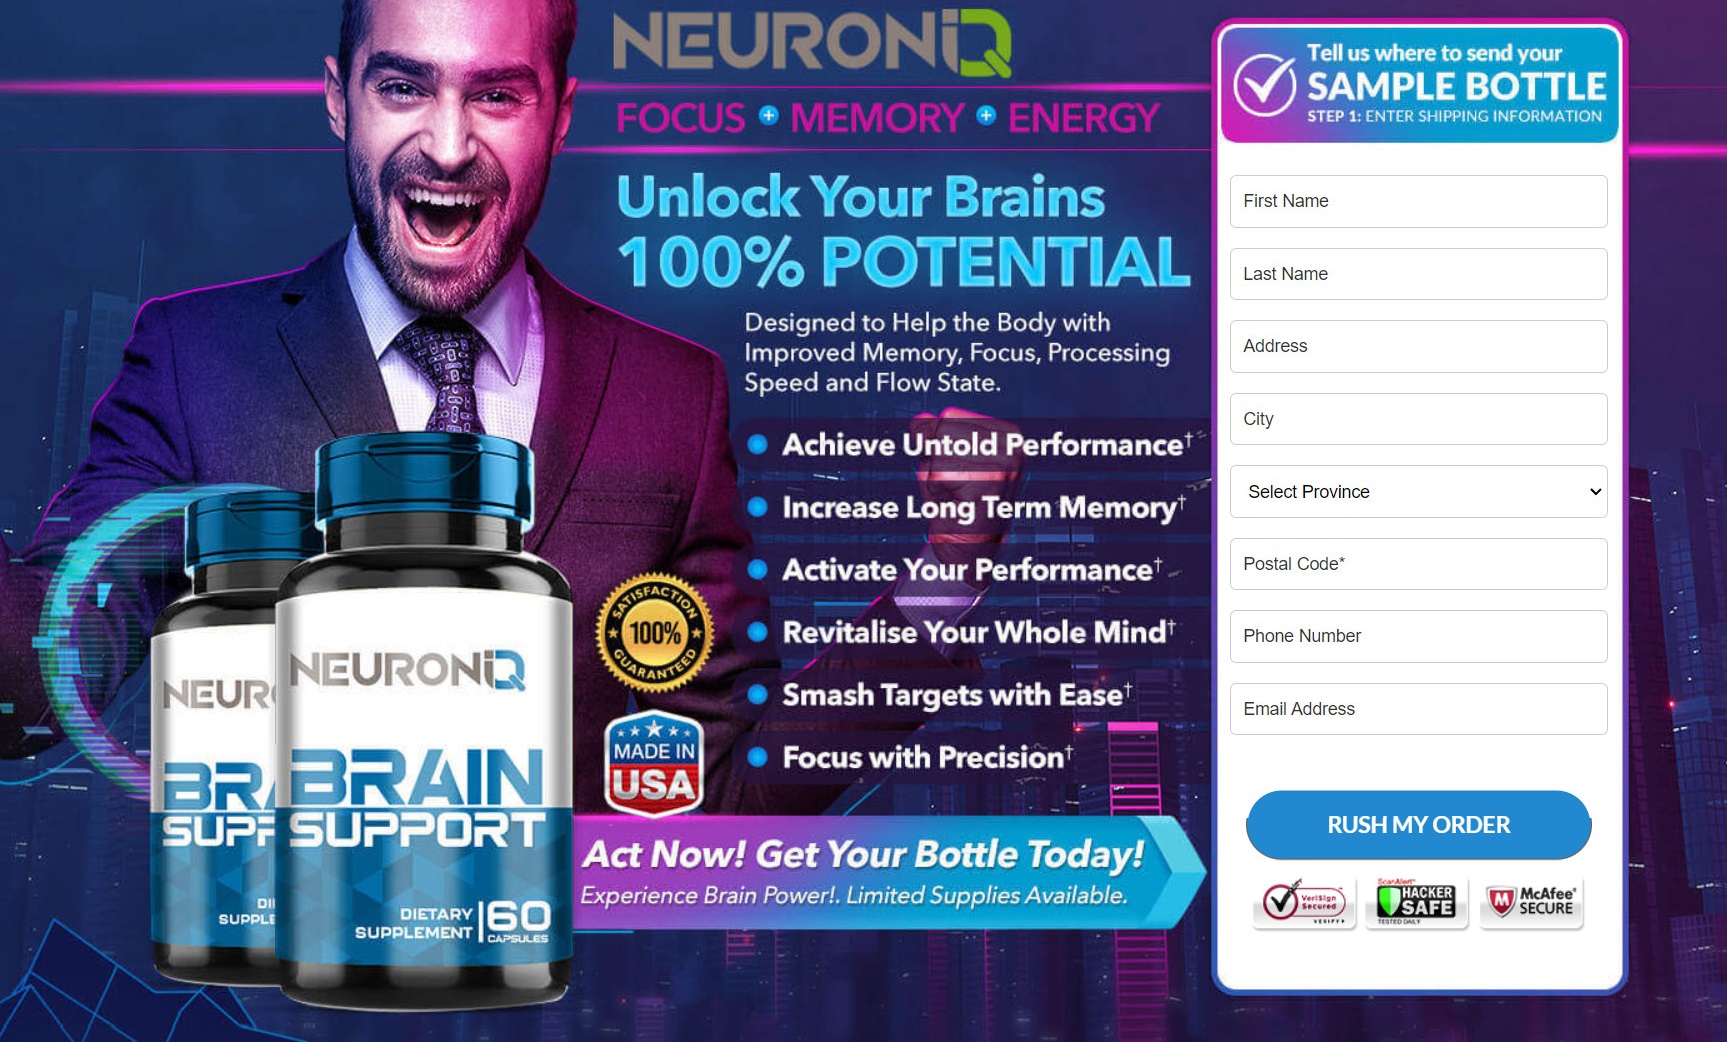 NeuronIQ-Brain-Support-CA.jpg